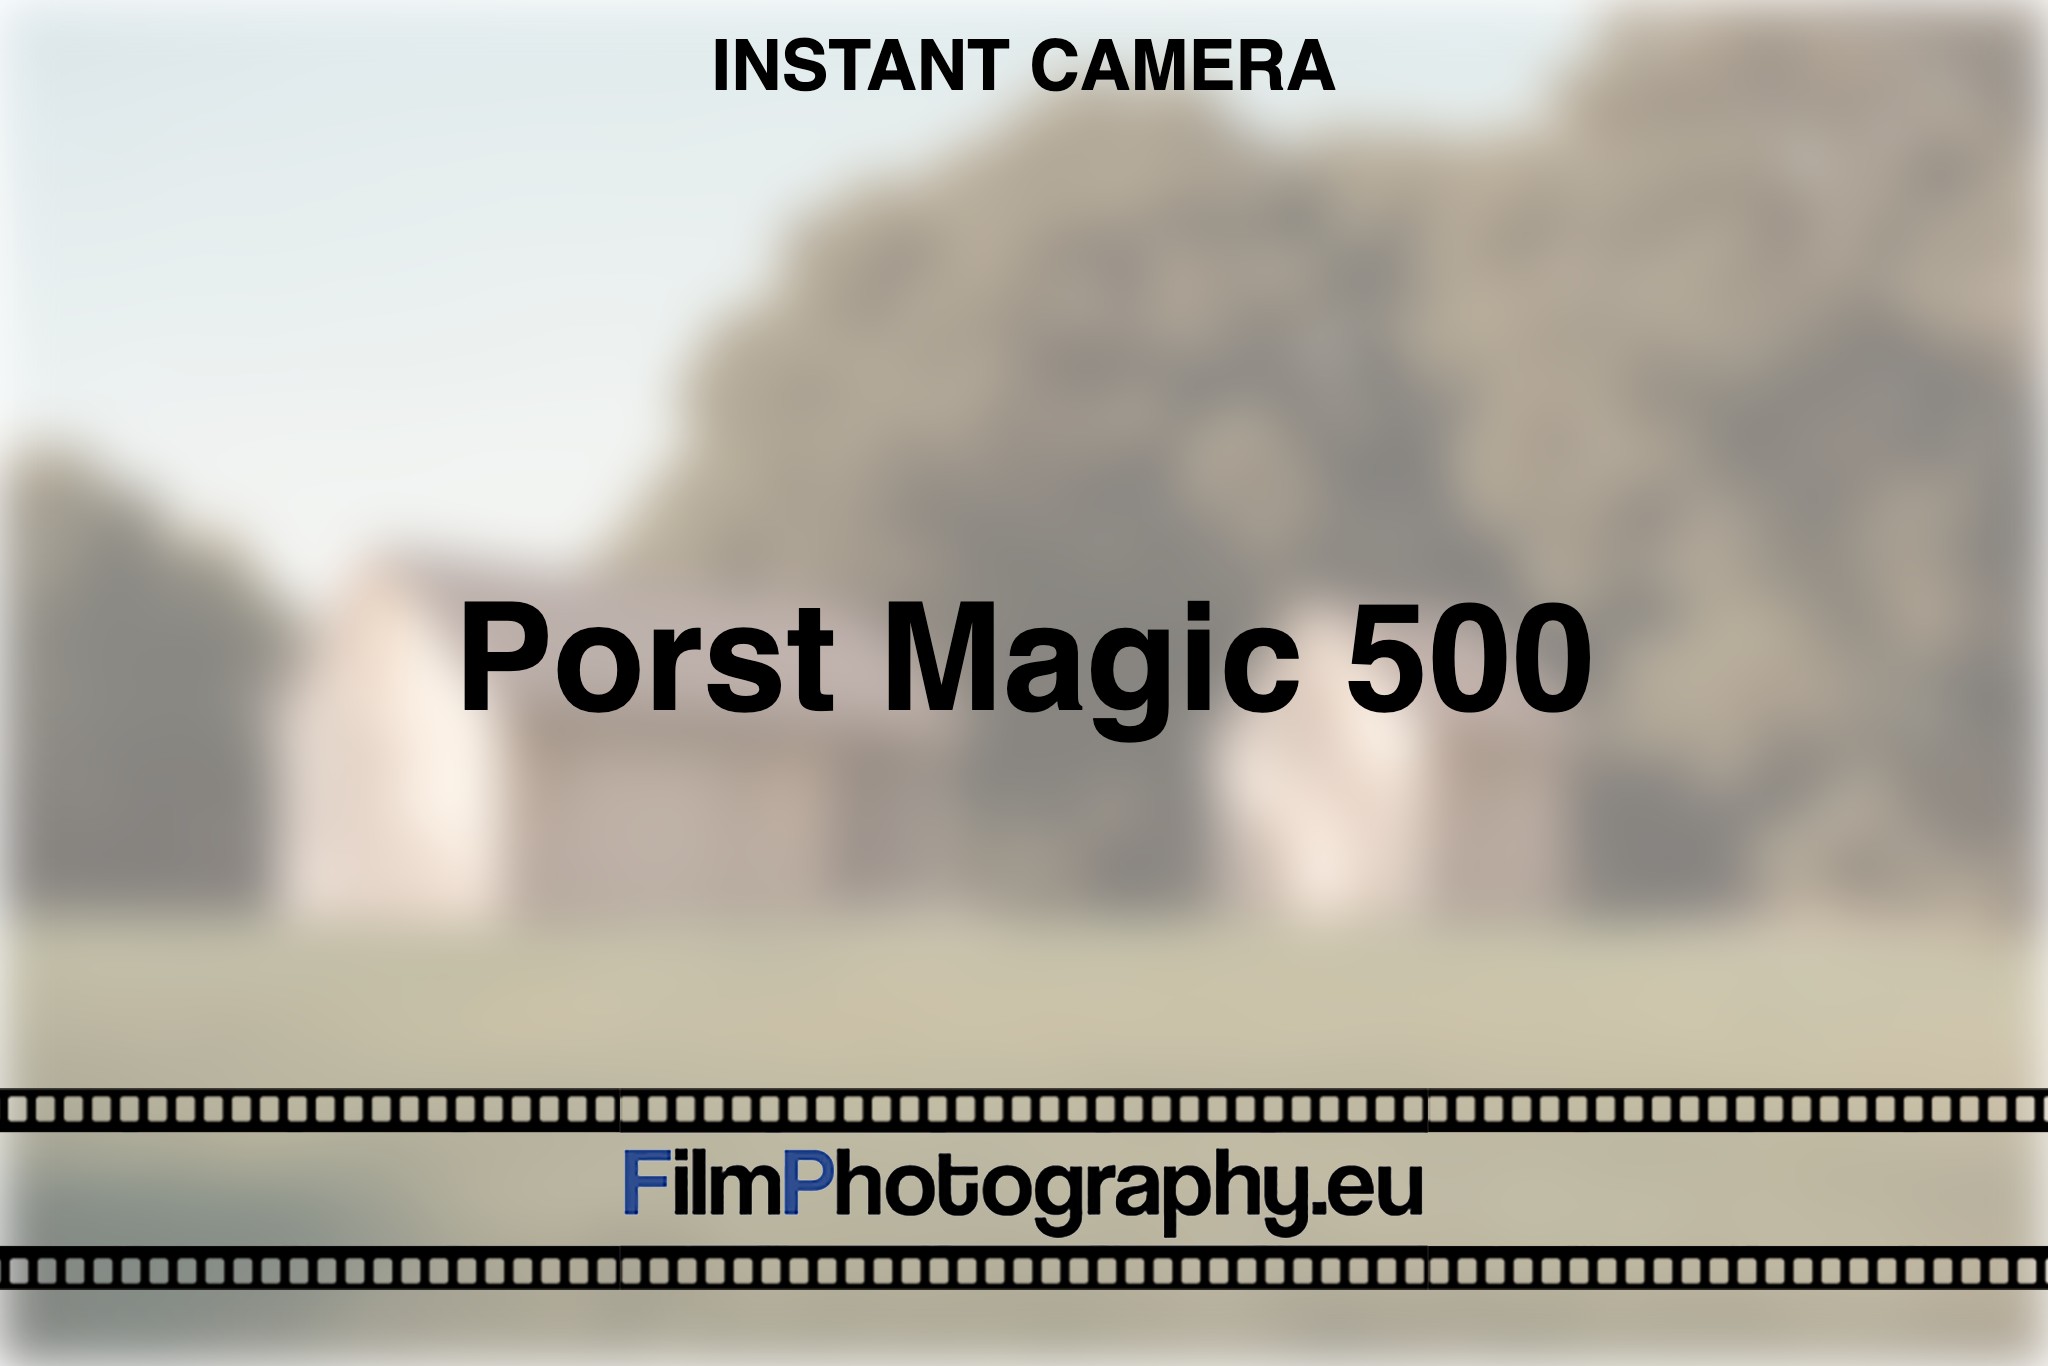 porst-magic-500-instant-camera-bnv